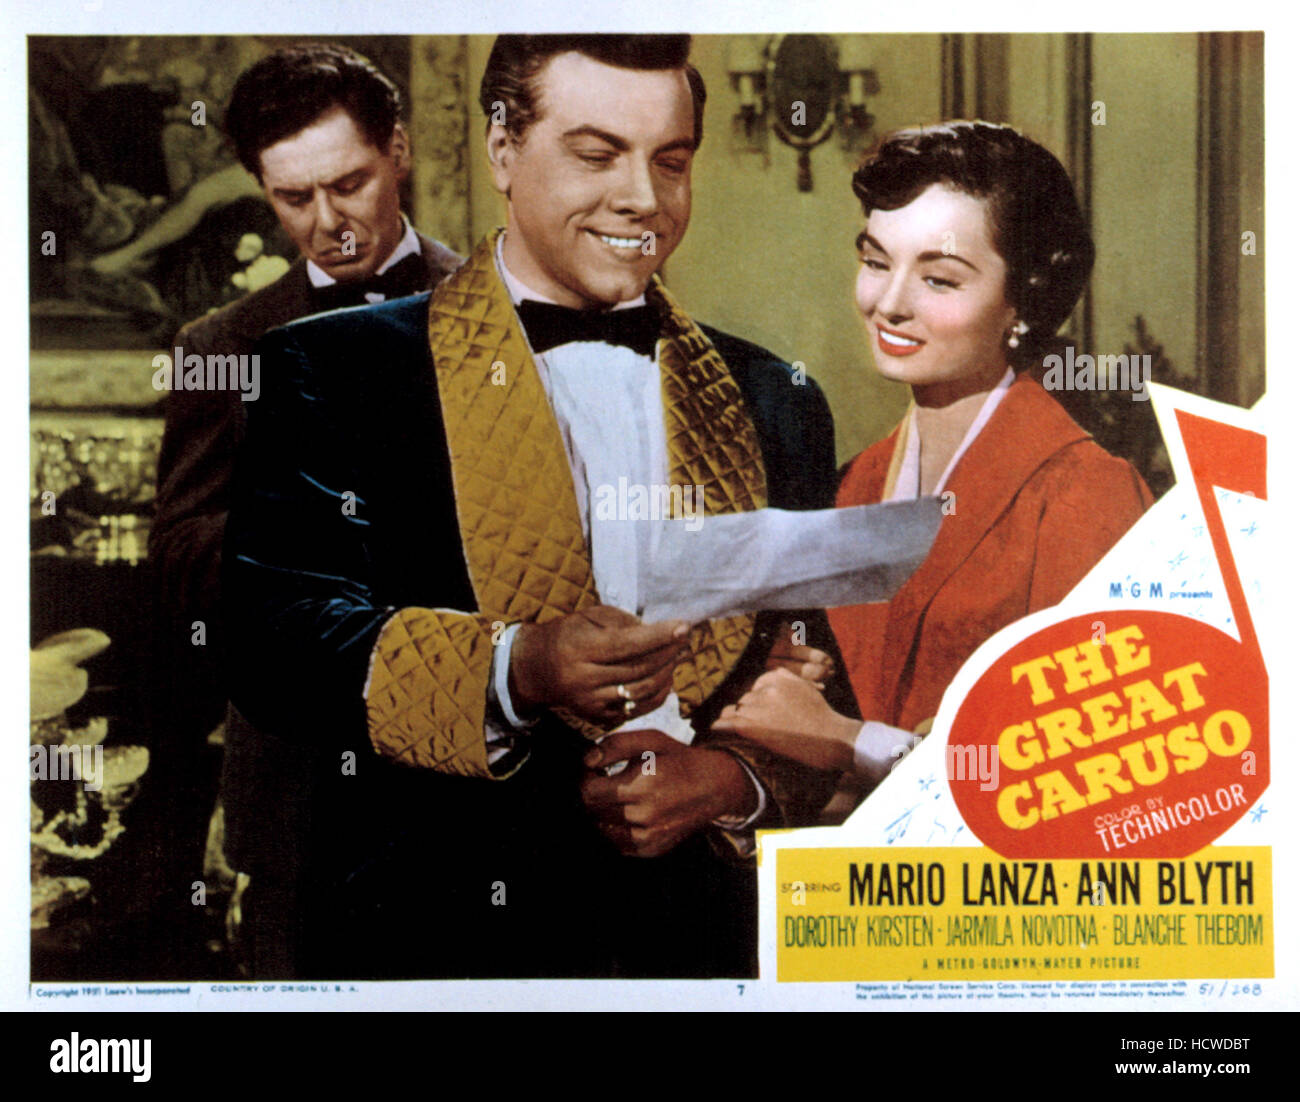 THE GREAT CARUSO, Mario Lanza, Ann Blyth, 1951 Stock Photo - Alamy